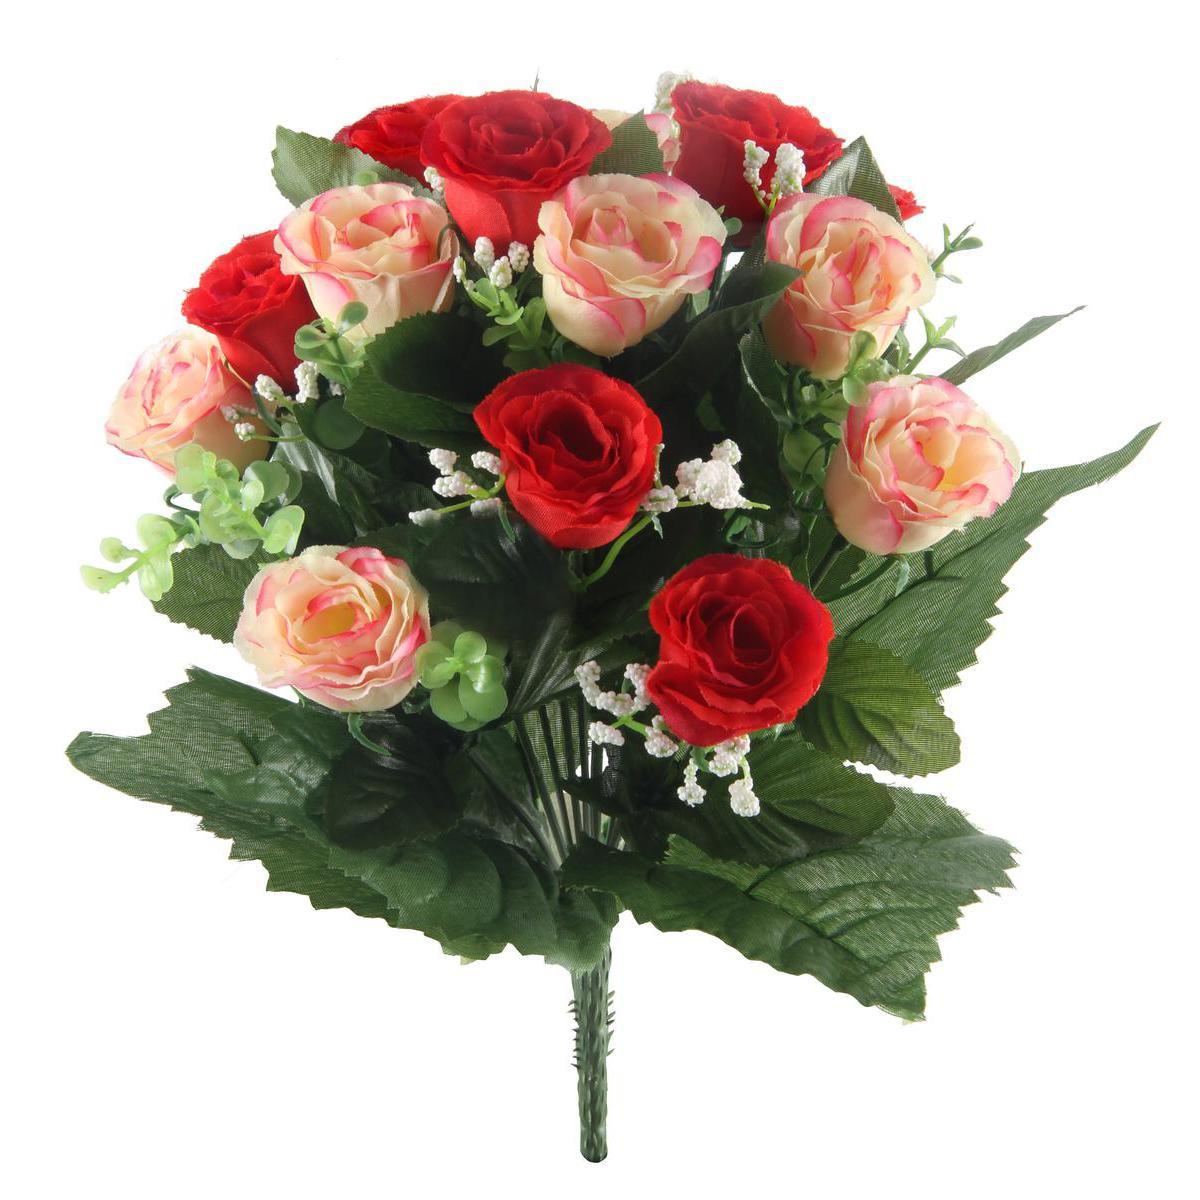 Bouquet de 13 roses et gypso - Plastique et polyester - Hauteur 32 cm - Rouge, rose et blanc